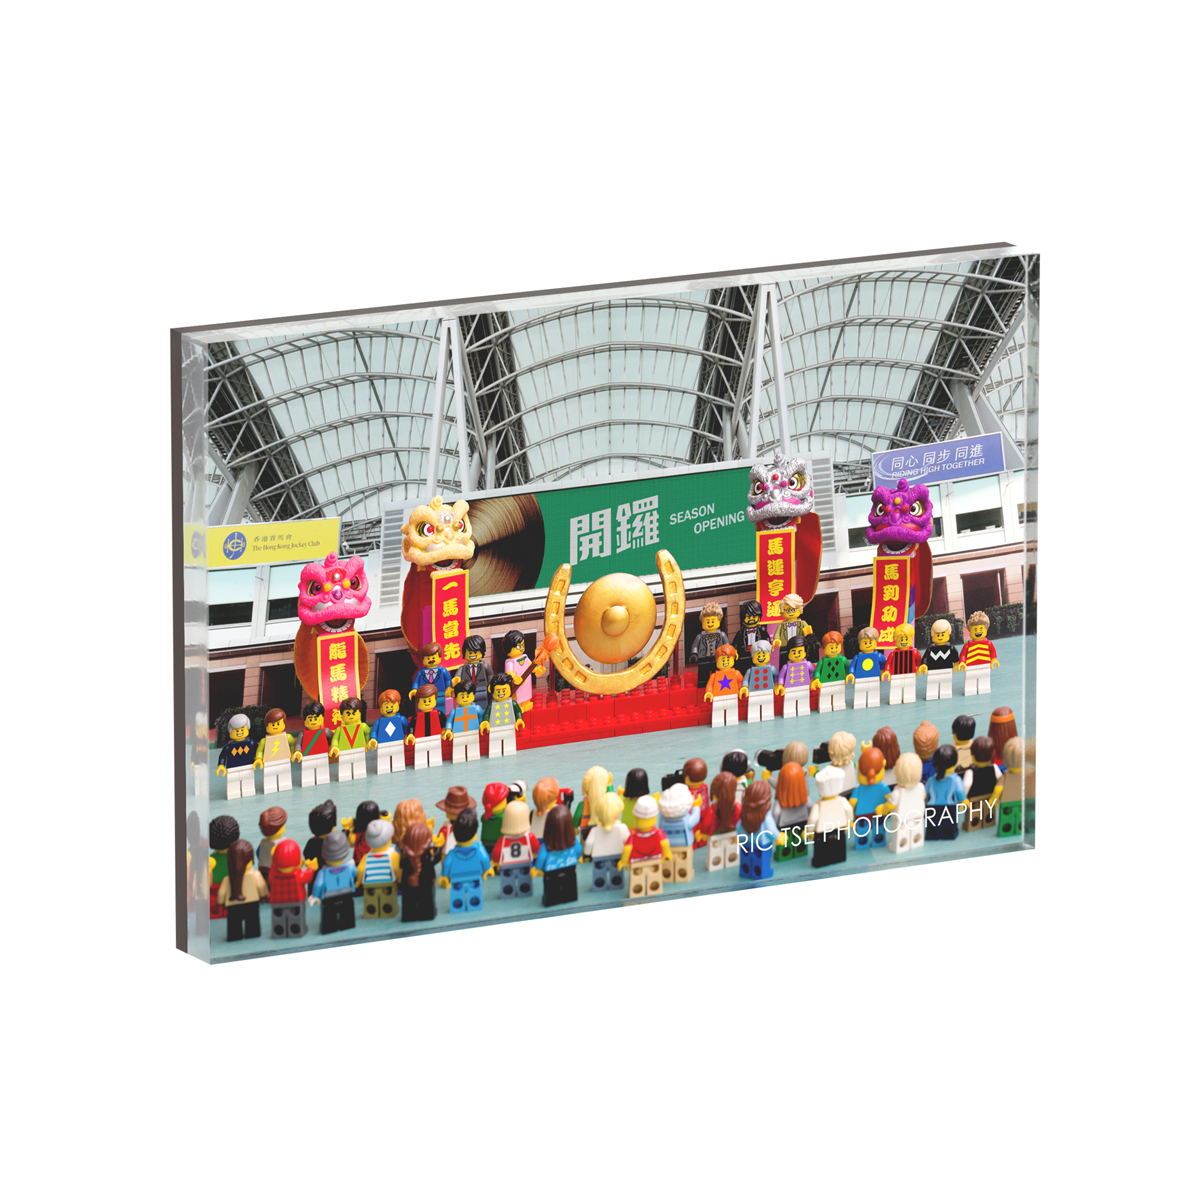 “Ric Tse Legography x Hong Kong Racecourse” Series Magnet